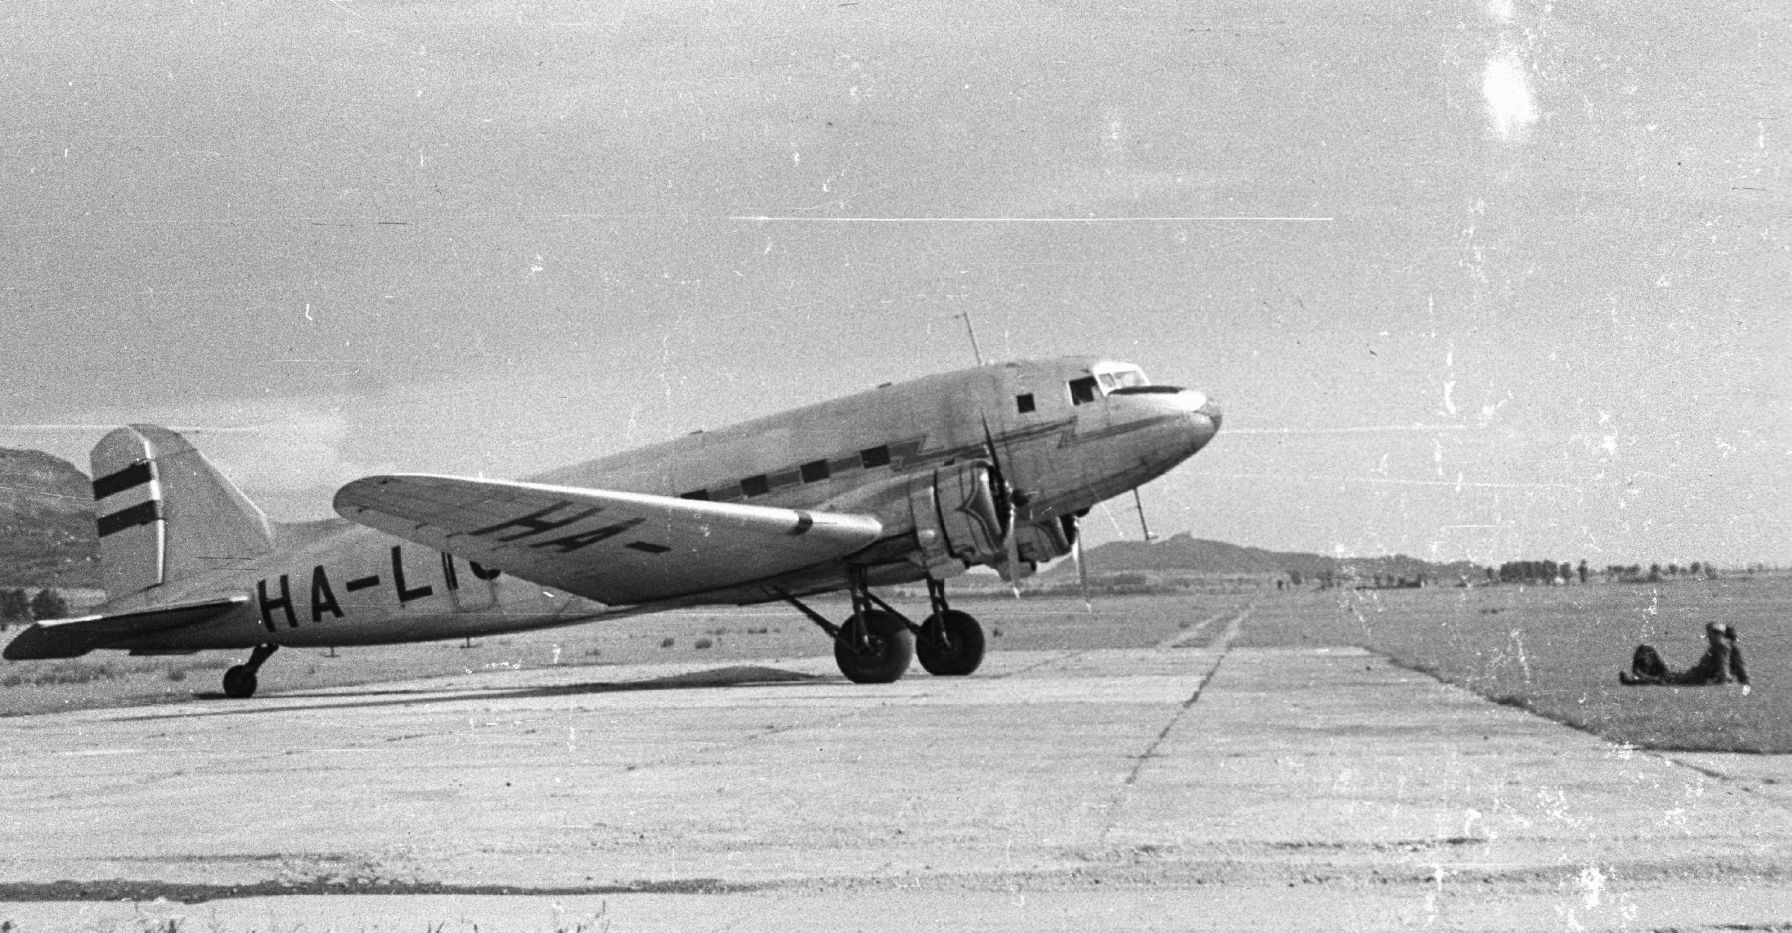 Li-2-es pihen Tapolcán: ez a típus alkalmas volt a belföldi járatok fenntartására, nem volt túl nagy és füvön is leszállhatott